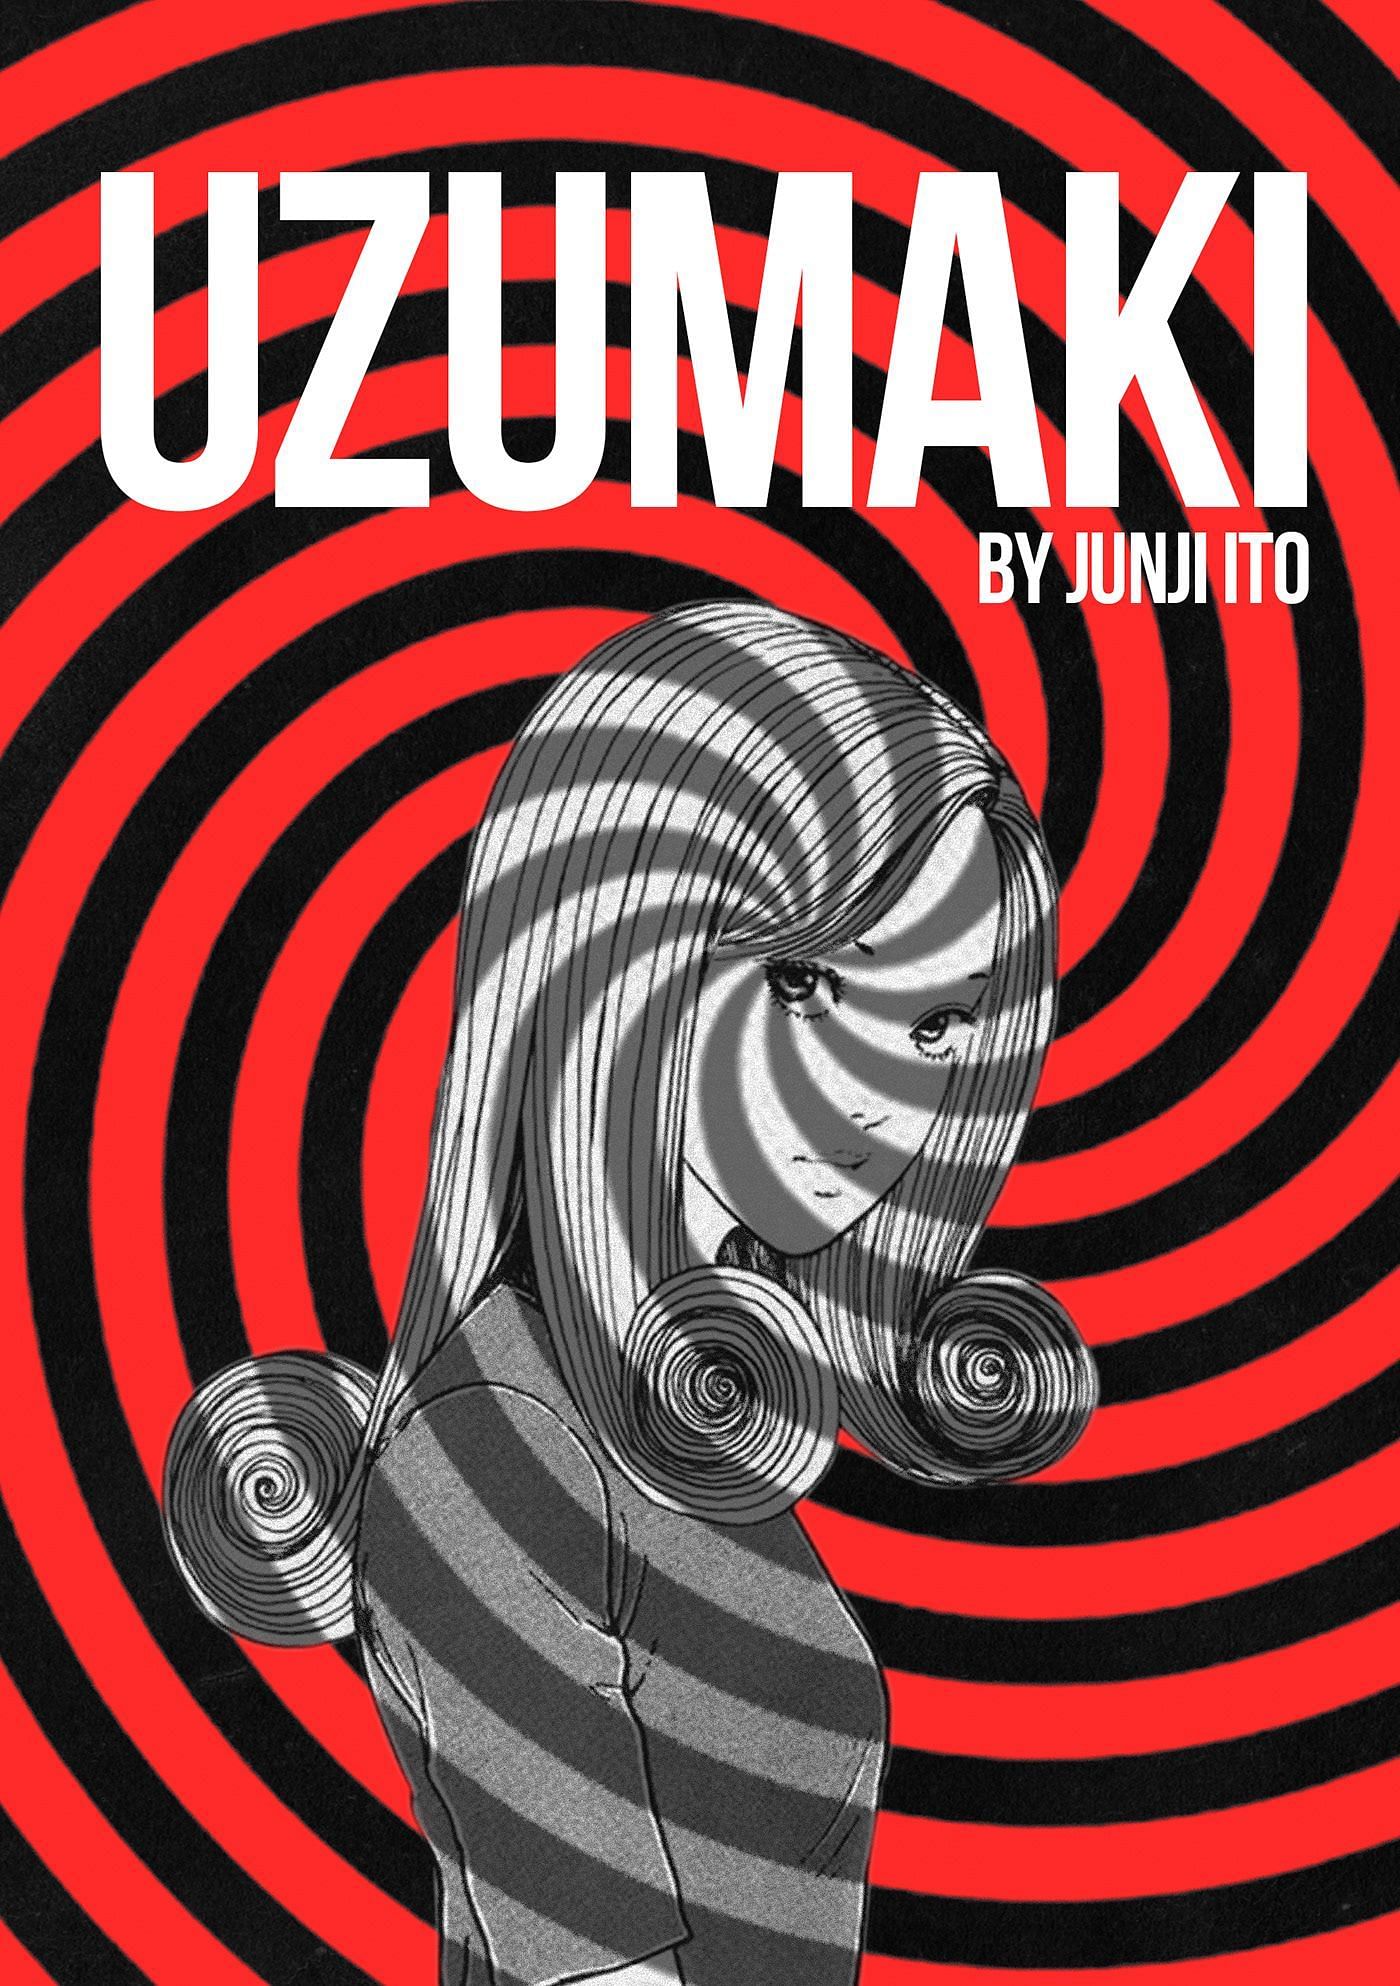 Uzumaki Cover (Image via Juji Ito/Shogakukan)